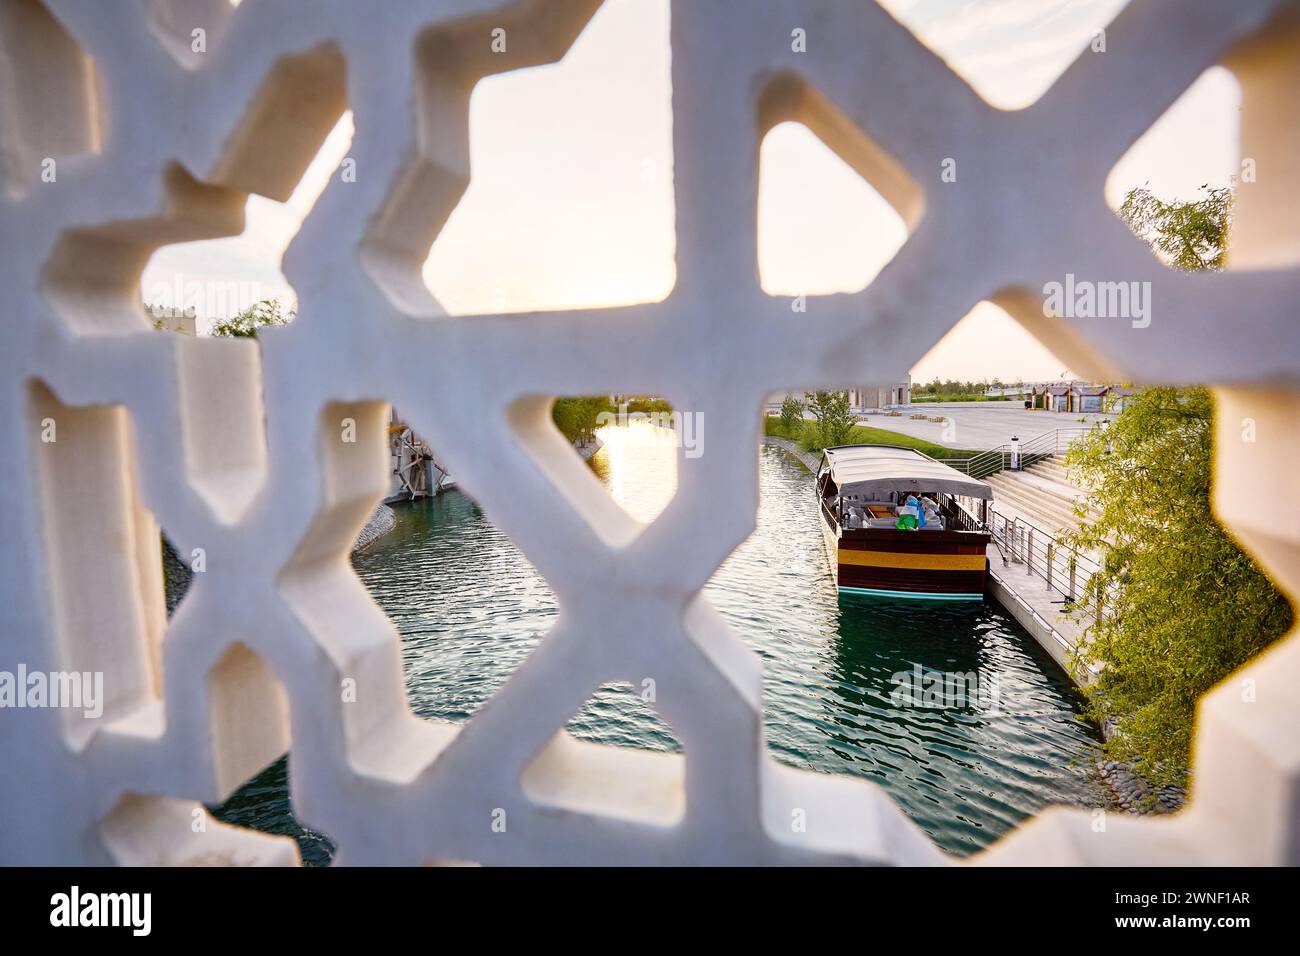 Bateau sur la jetée au canal d'eau Samarkand ville éternelle Boqiy Shahar Registan complexe et pont de marbre avec motif d'étoile au premier plan. Banque D'Images